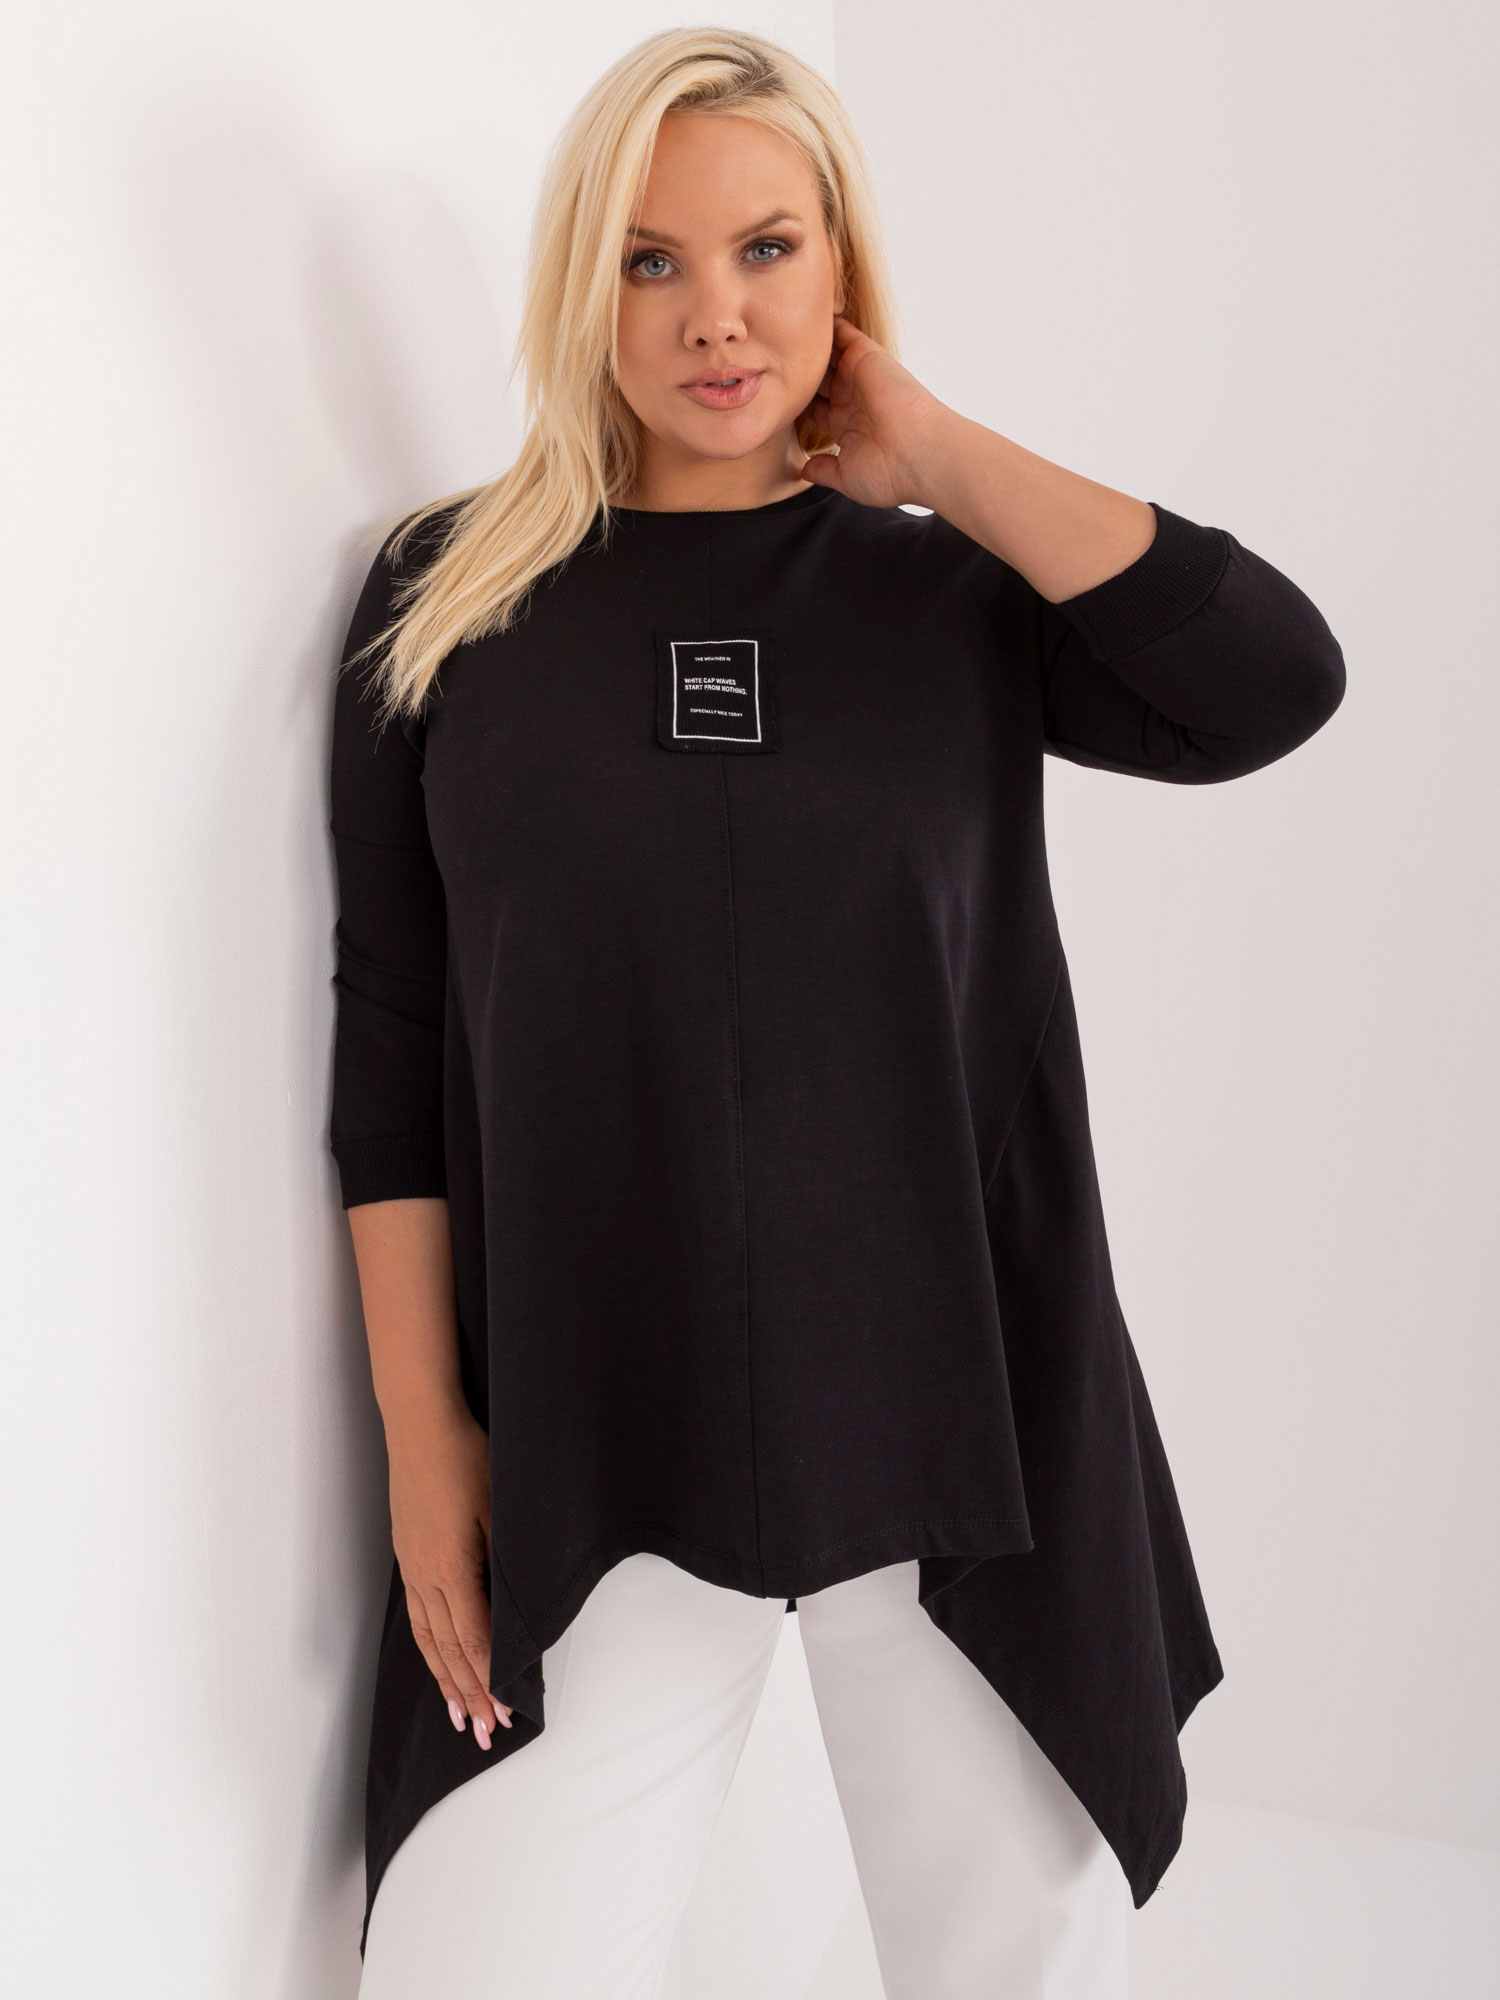 Black asymmetrical cotton blouse plus size